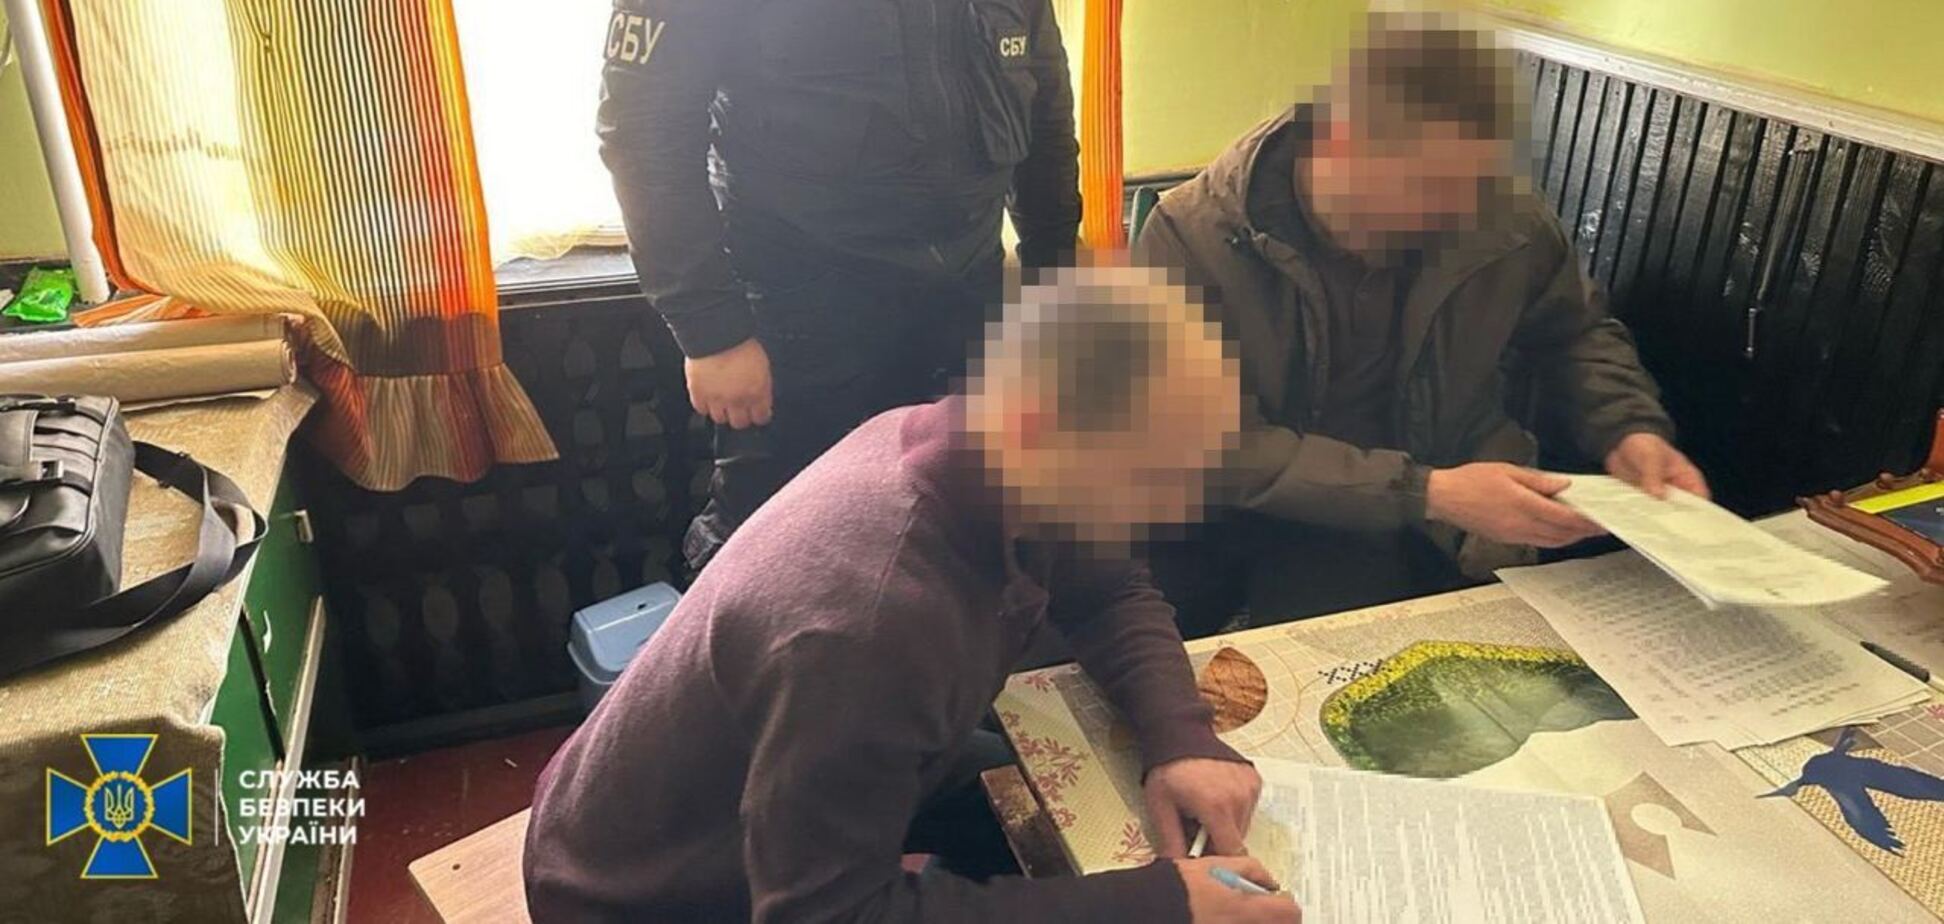 СБУ разоблачила заключенного-агента ФСБ, который вербовал других осужденных для подрывной деятельности против Украины. Фото